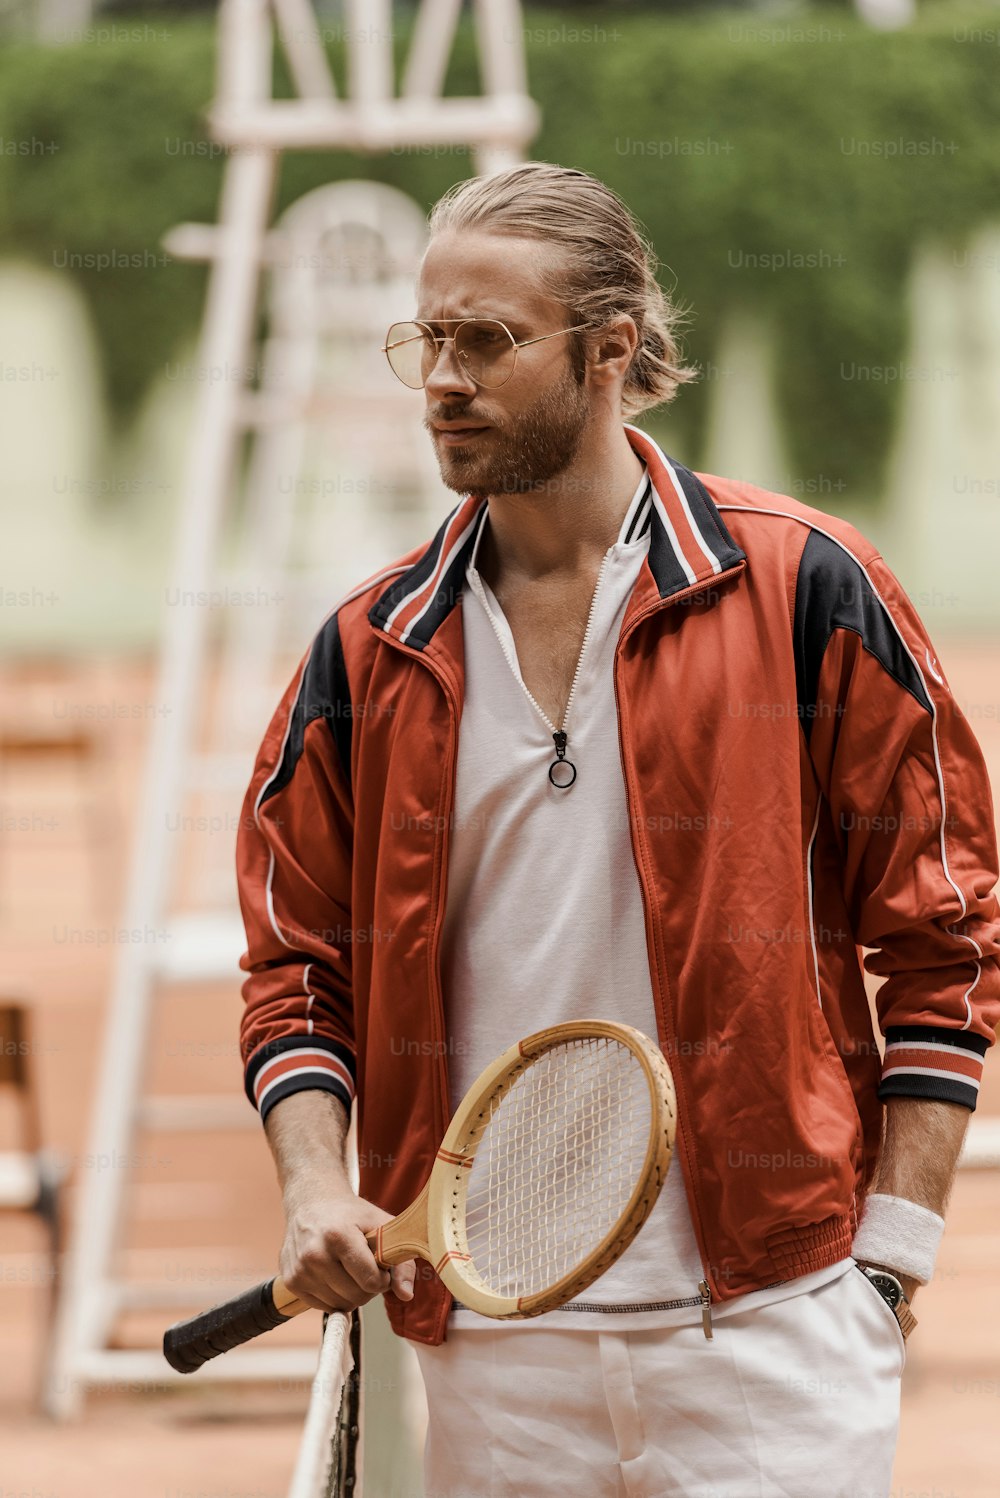 テニスコートでラケットを持って立ち、目をそらすハンサムなレトロスタイルのテニスプレーヤー